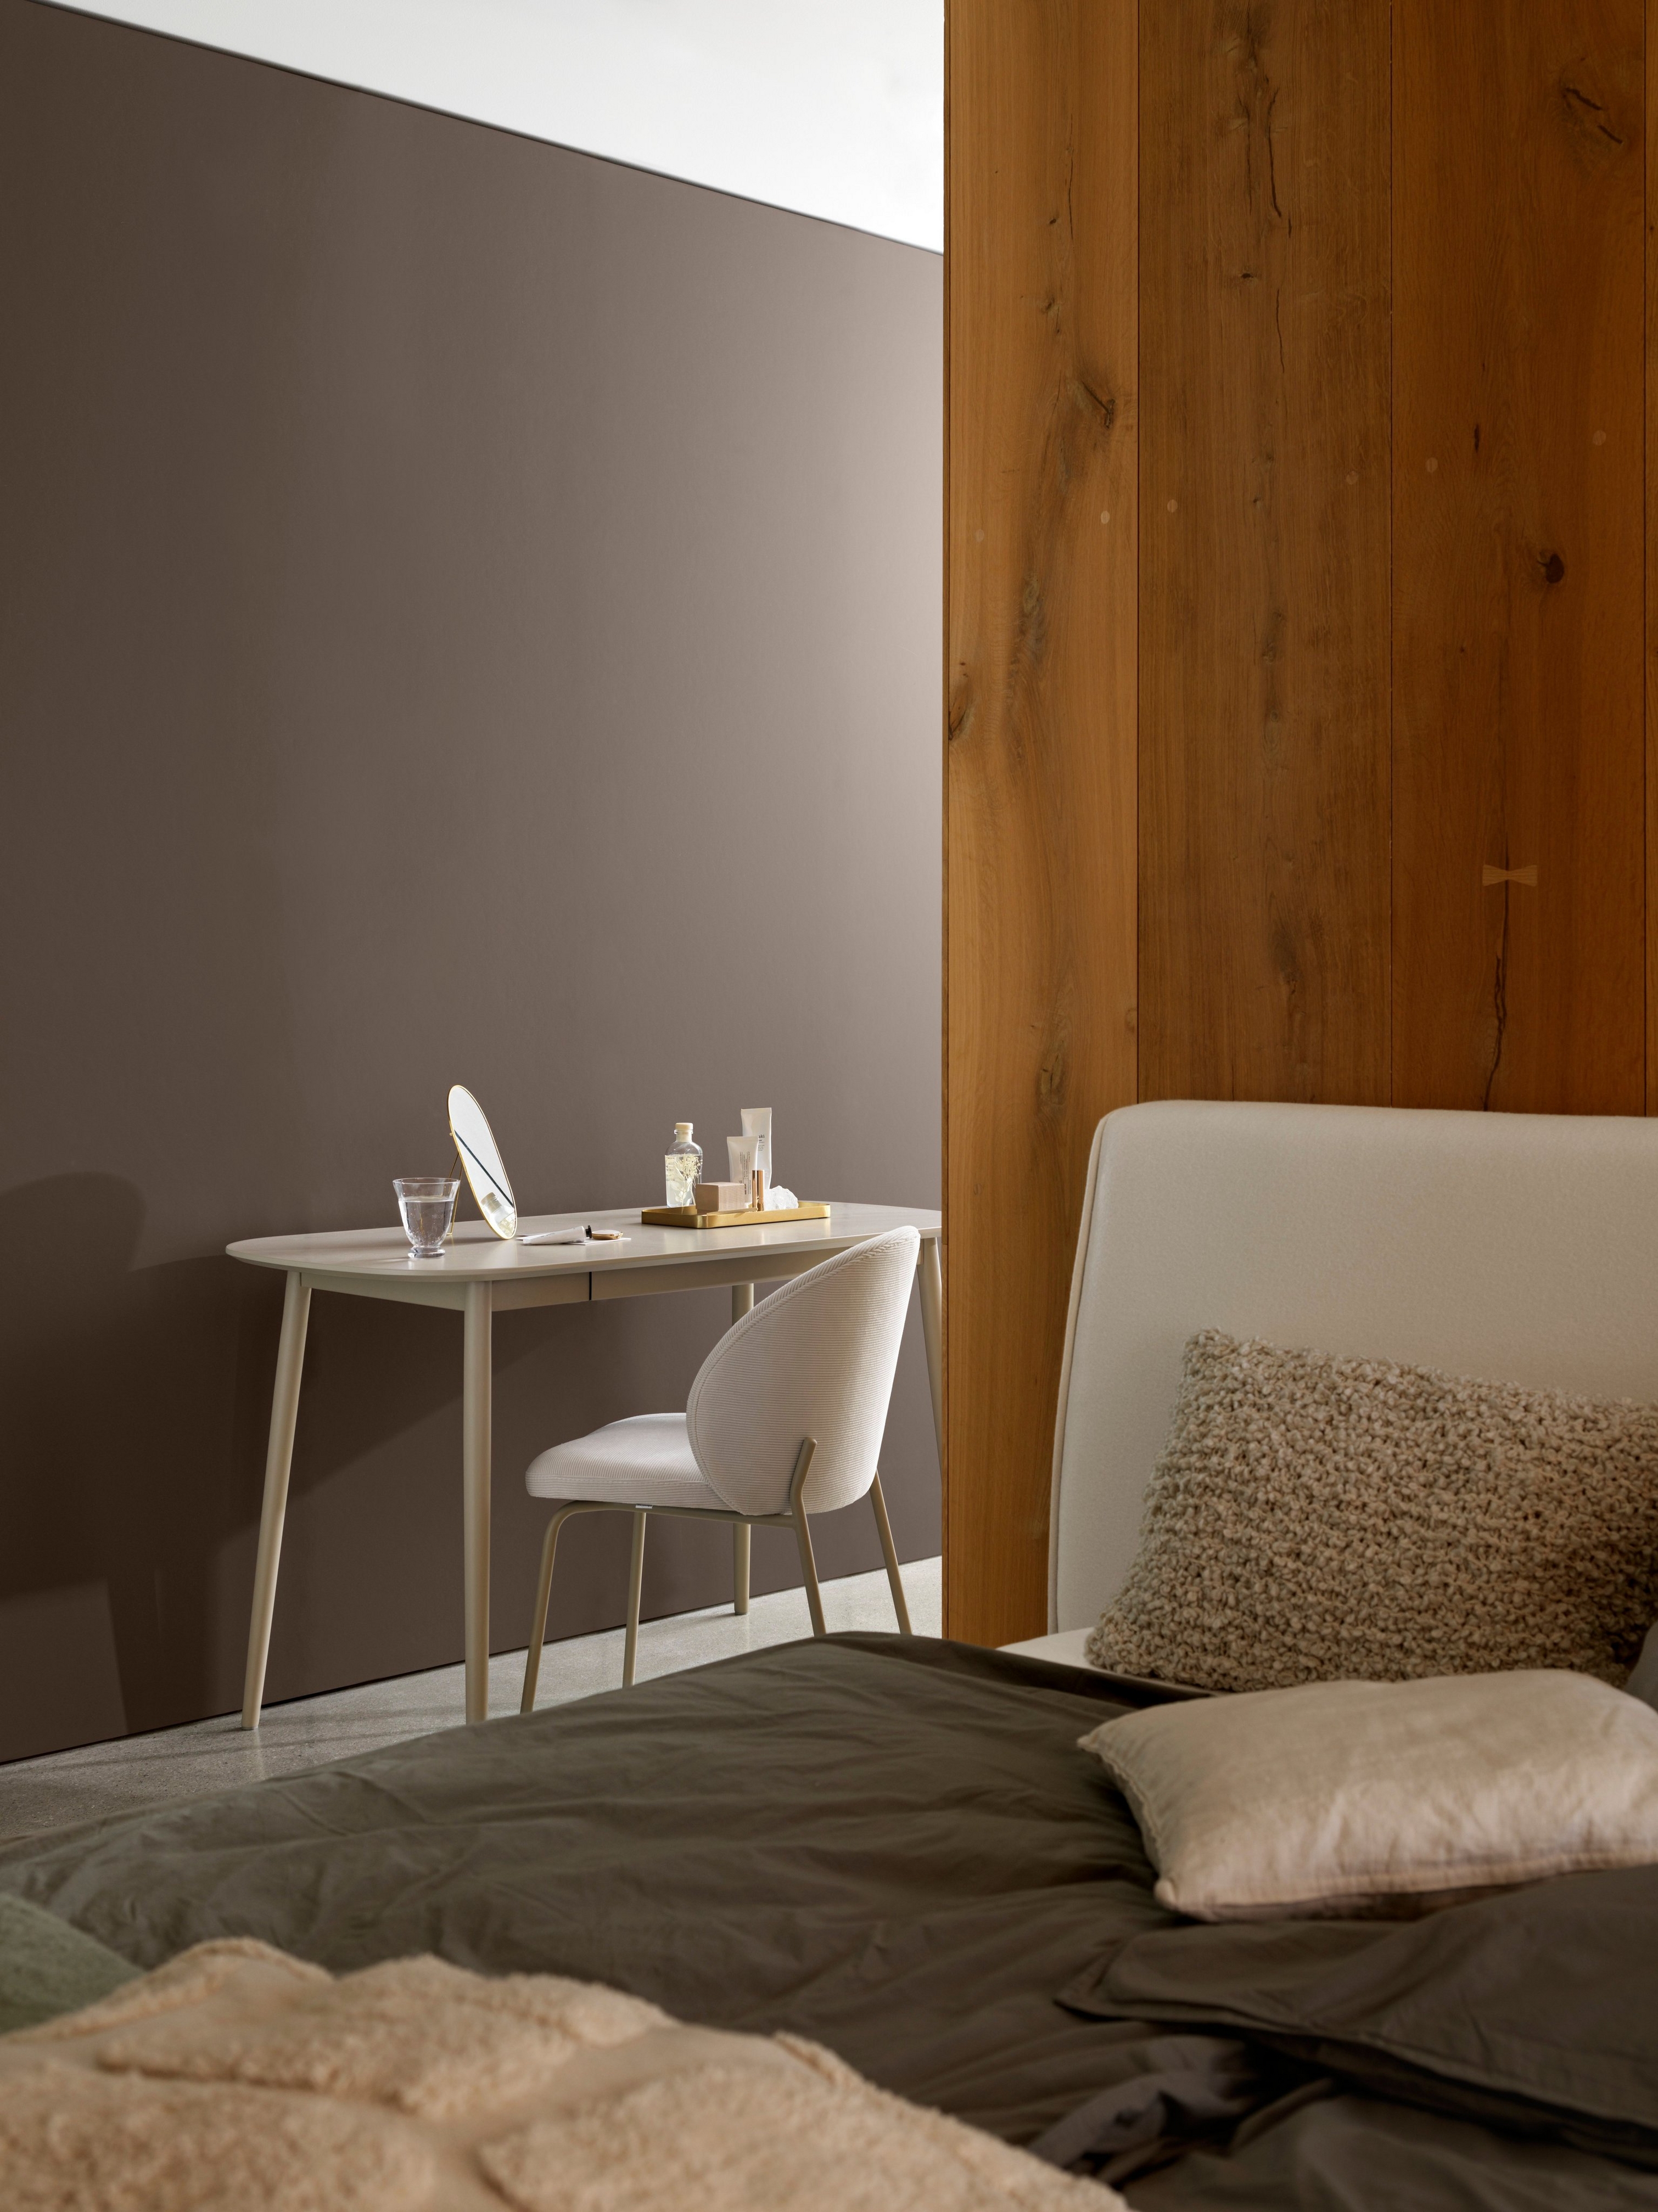 Hoek in een slaapkamer met een eenvoudige inrichting met bureau, stoel en gezellig beddengoed in de buurt van een houten paneel.